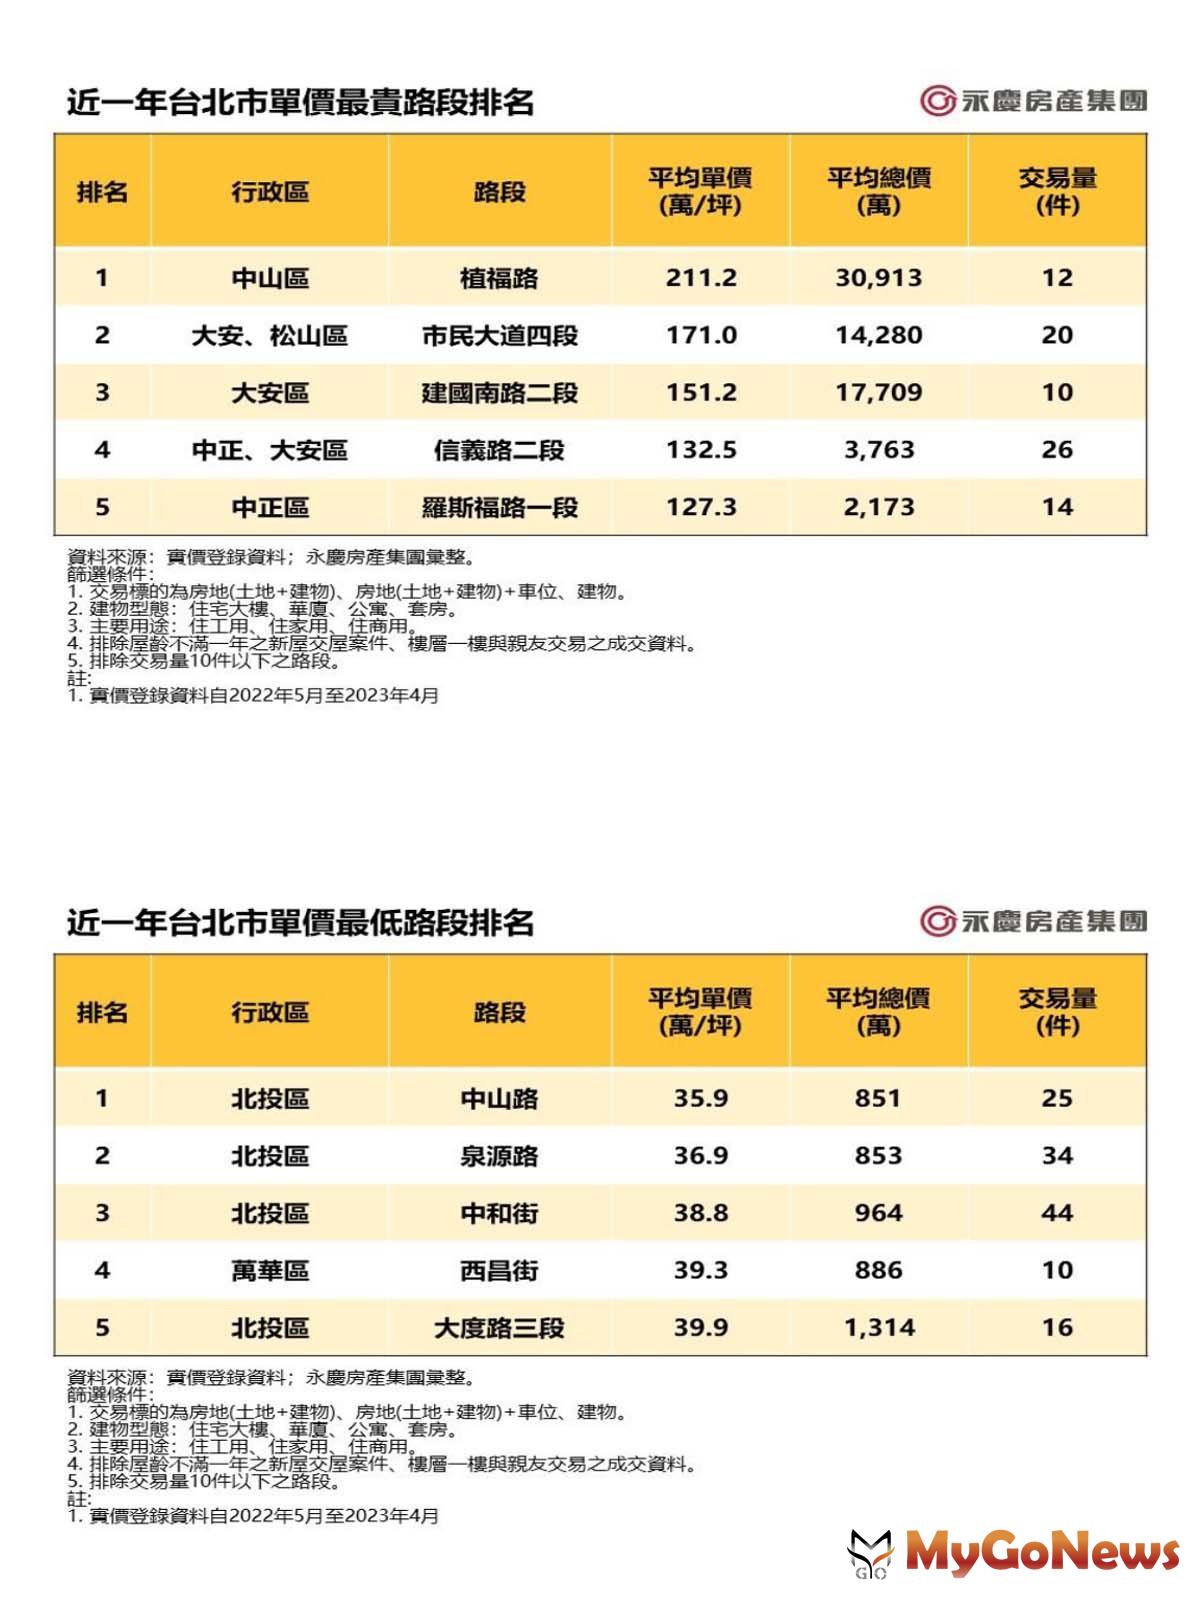 近一年台北市單價最貴路段排名/近一年台北市單價最低路段排名 MyGoNews房地產新聞 市場快訊